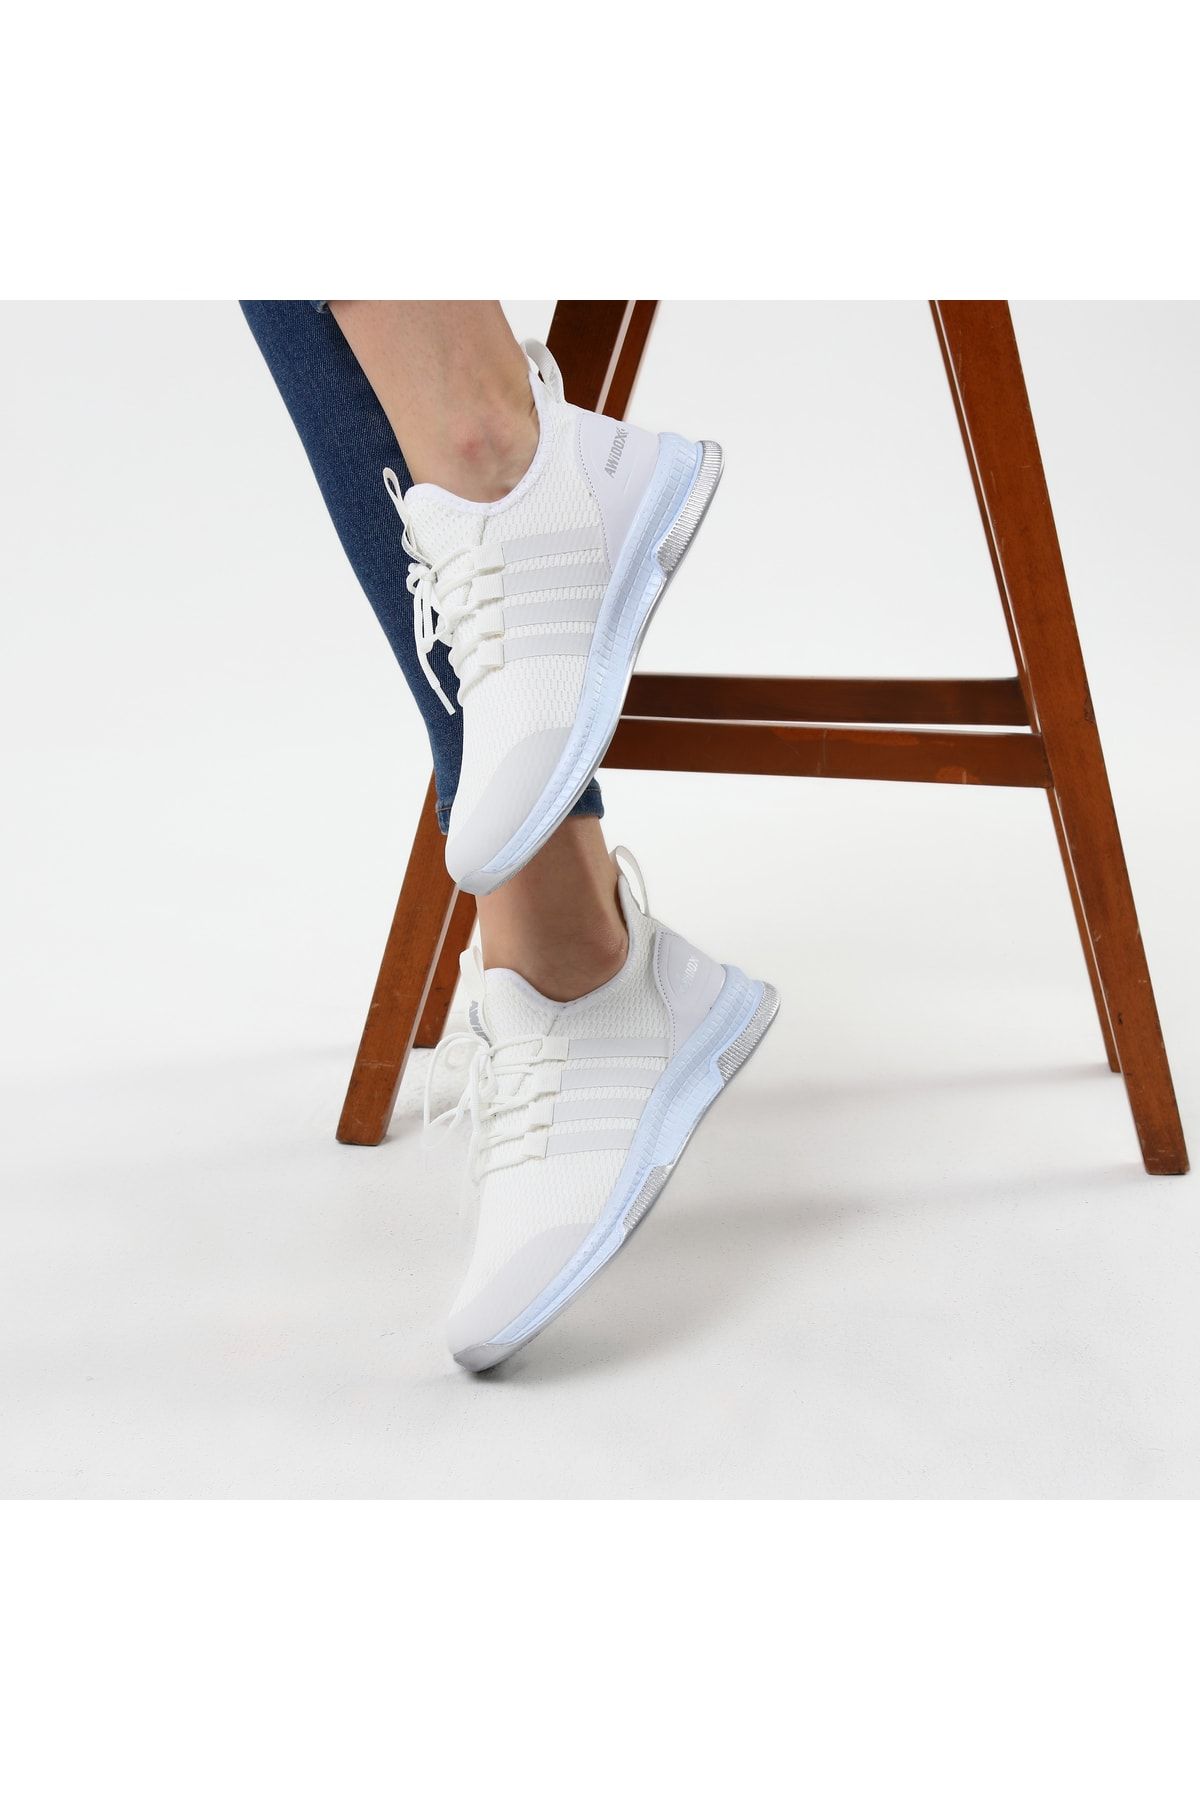 AVA Beyaz Kadın Hafif Günlük Spor Yürüyüş Sneaker Ayakkabı